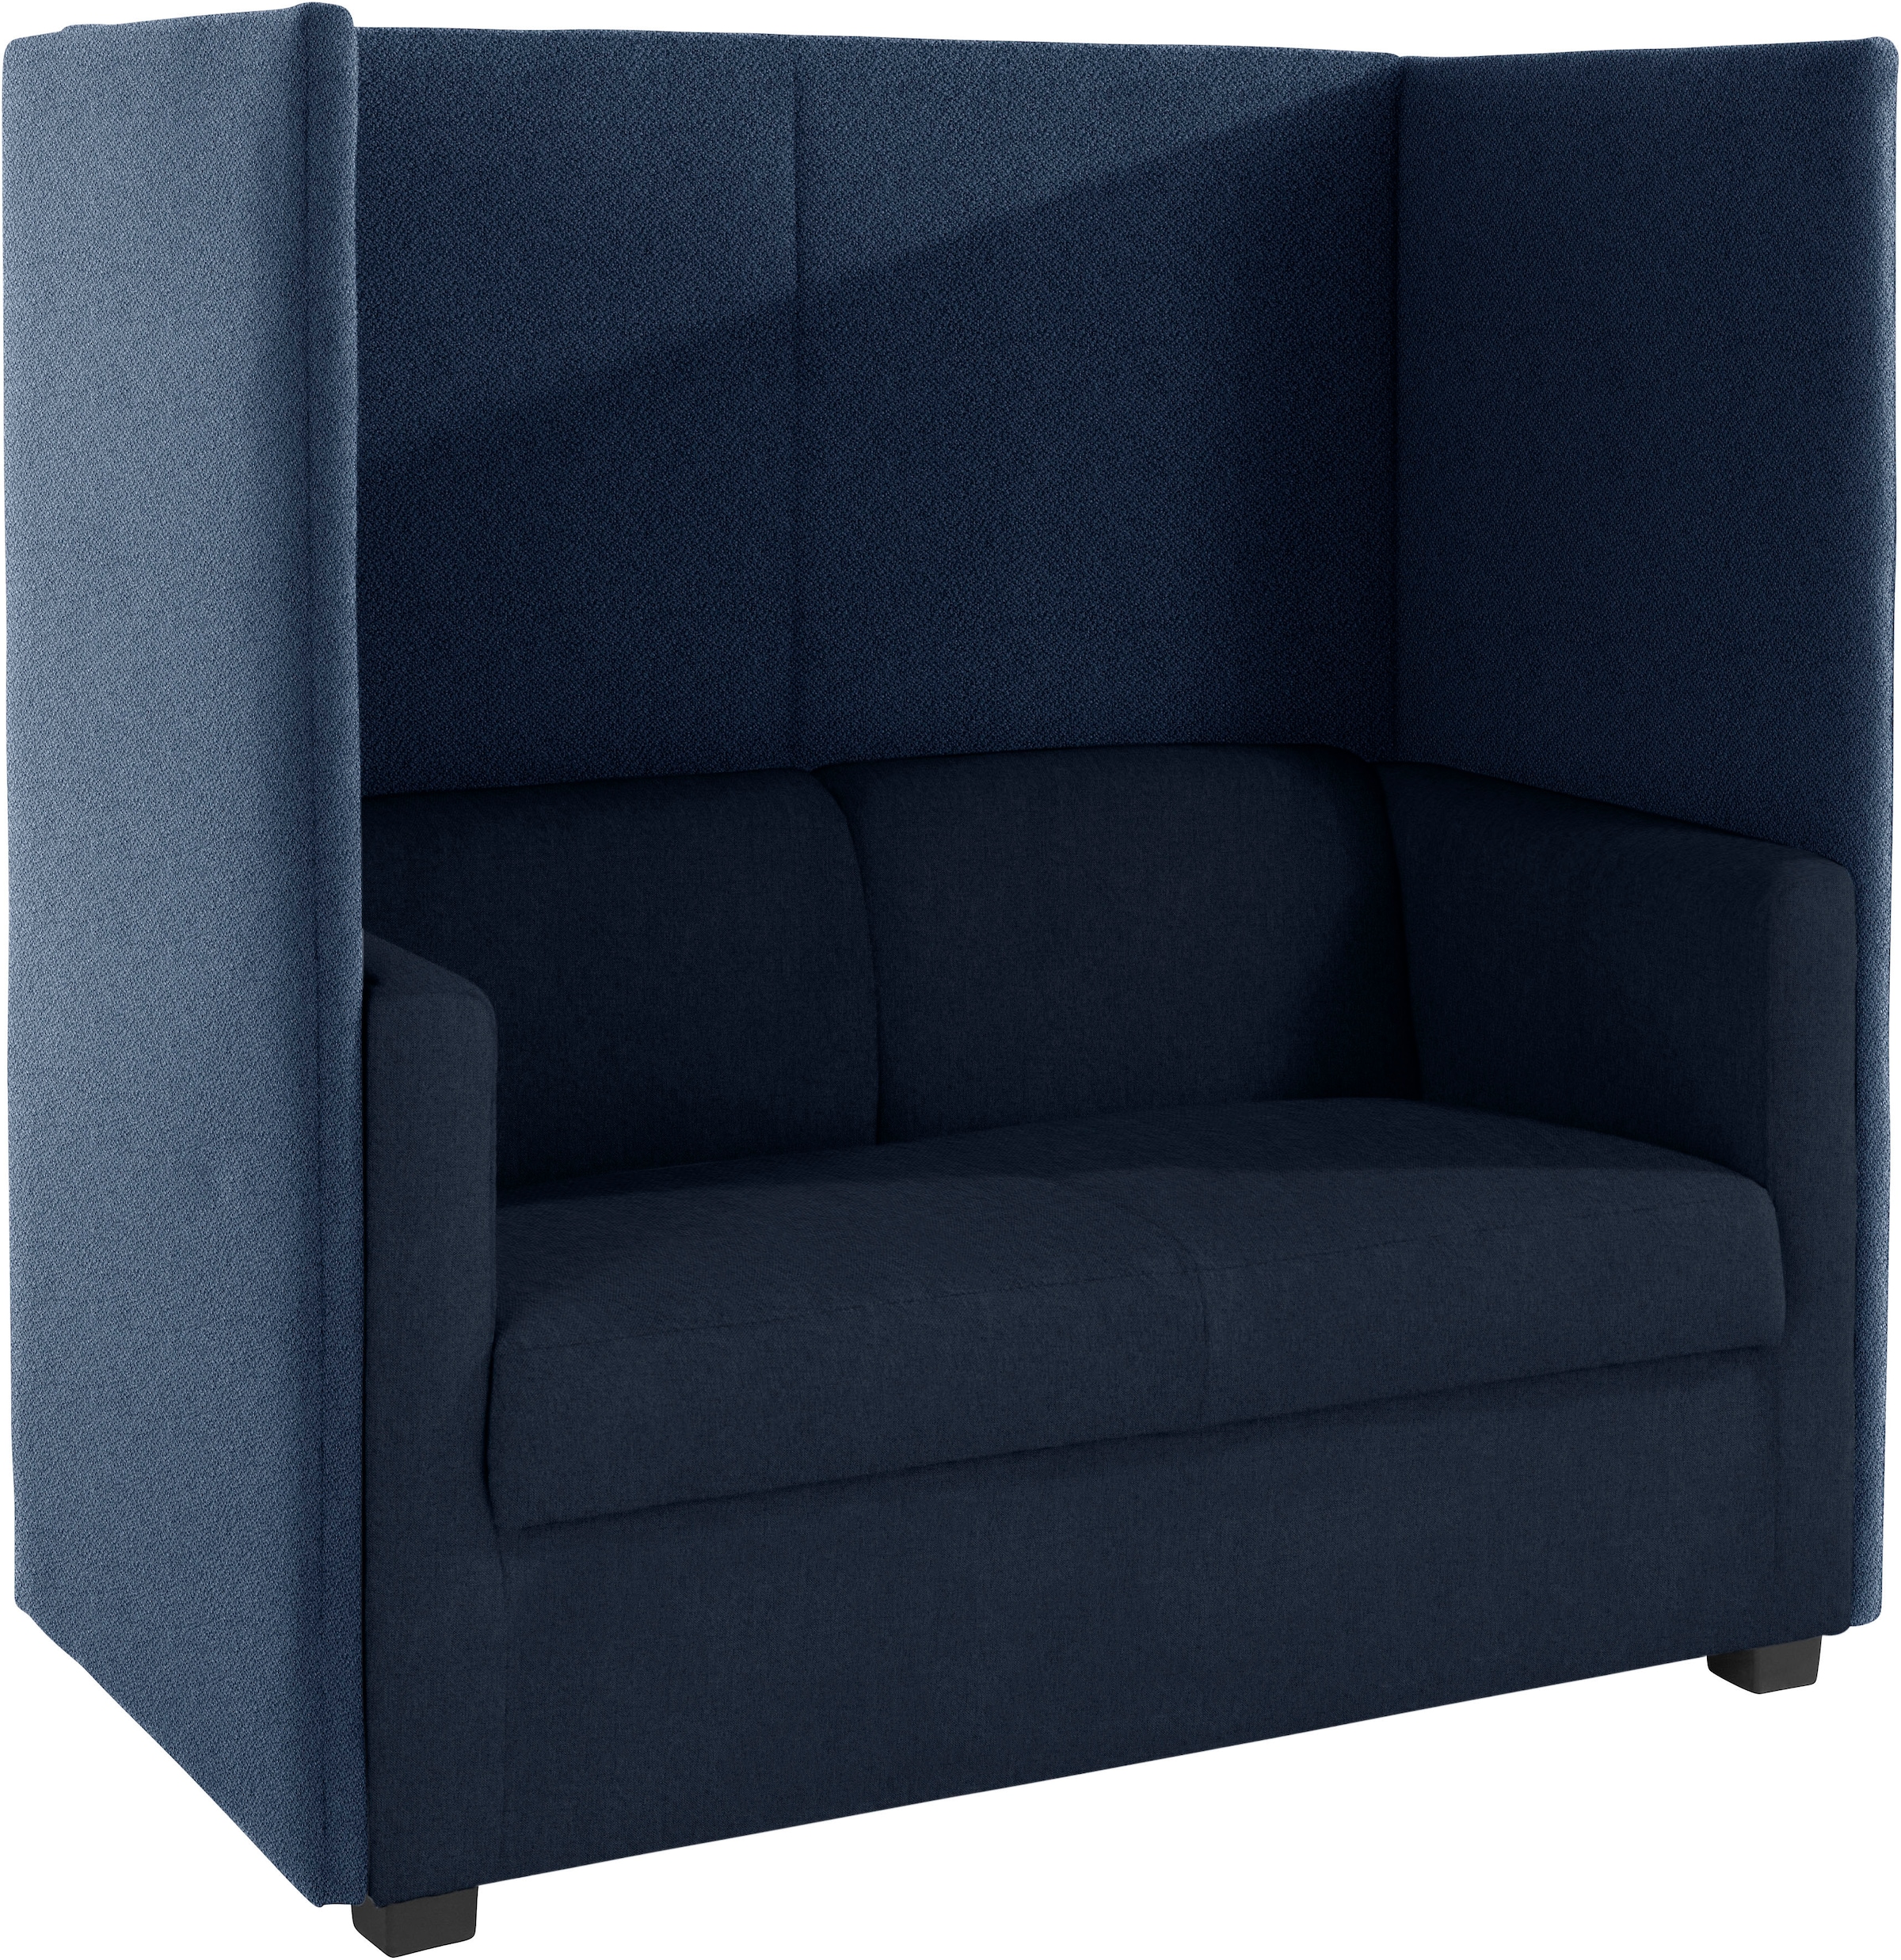 DOMO collection 2-Sitzer »Kea«, mit praktischem Sichtschutz, Breite 132 cm